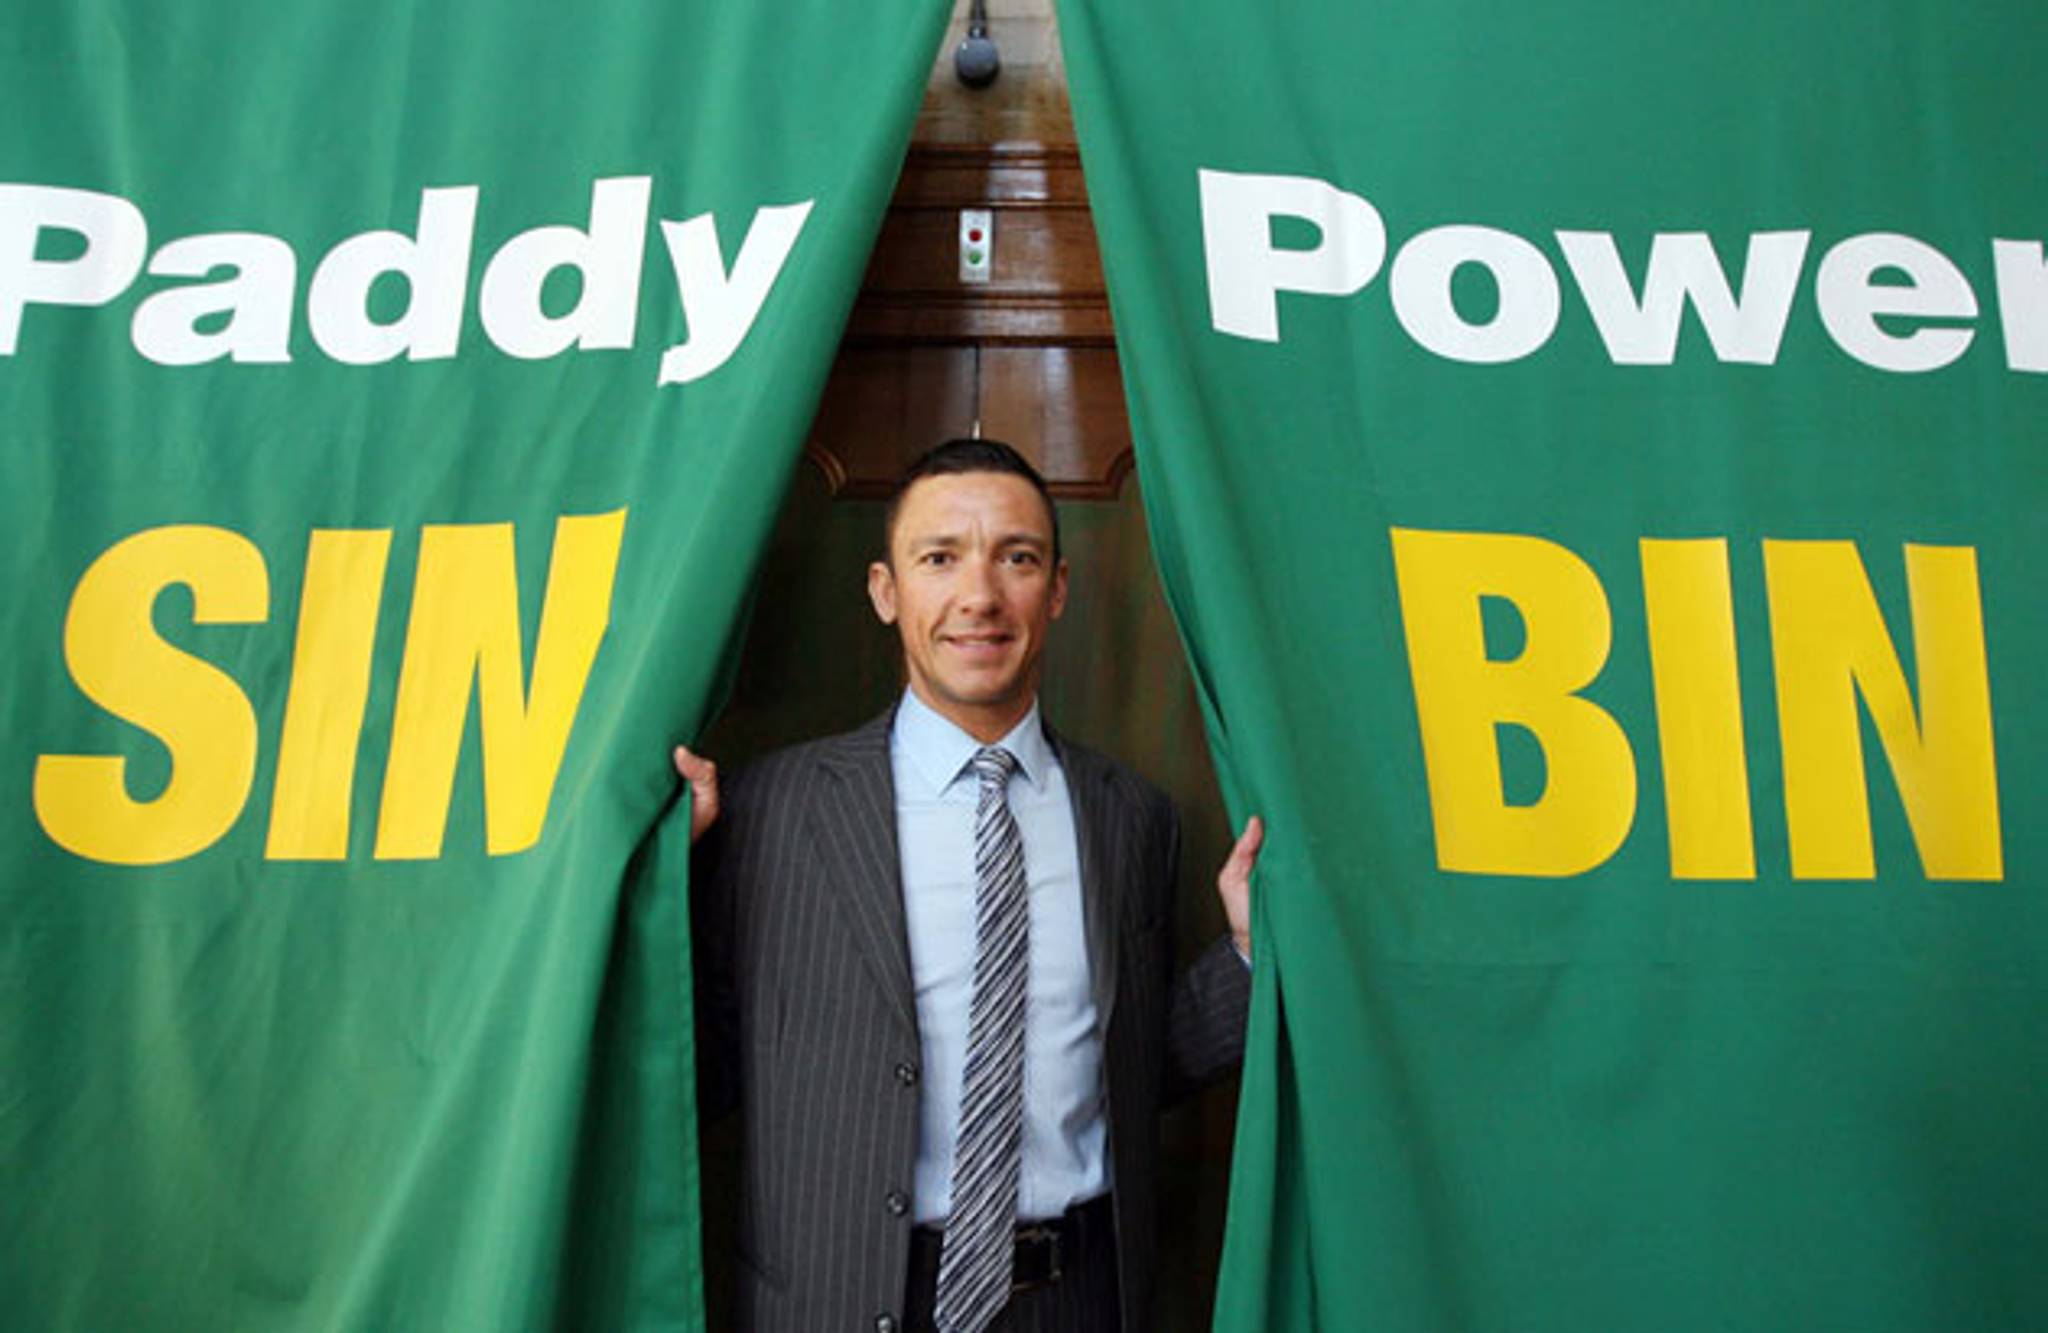 Paddy Power Sin Bin: an unlikely partnership